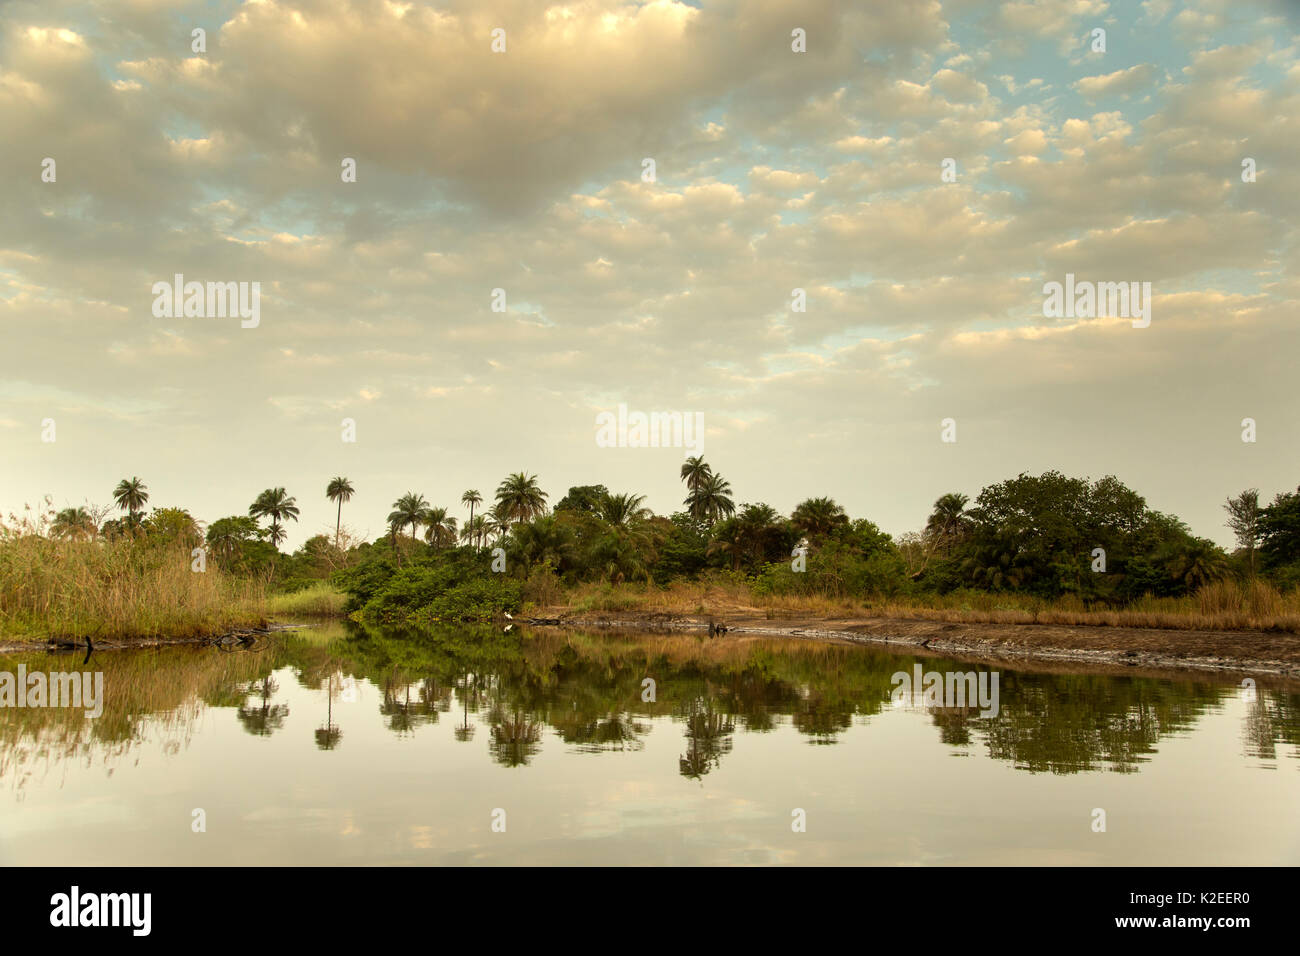 Insenature di mangrovie lungo il fiume Marakissa. Queste mangrovie sono state gravemente degradato da influenza umana. Gambia, Africa, maggio. Foto Stock